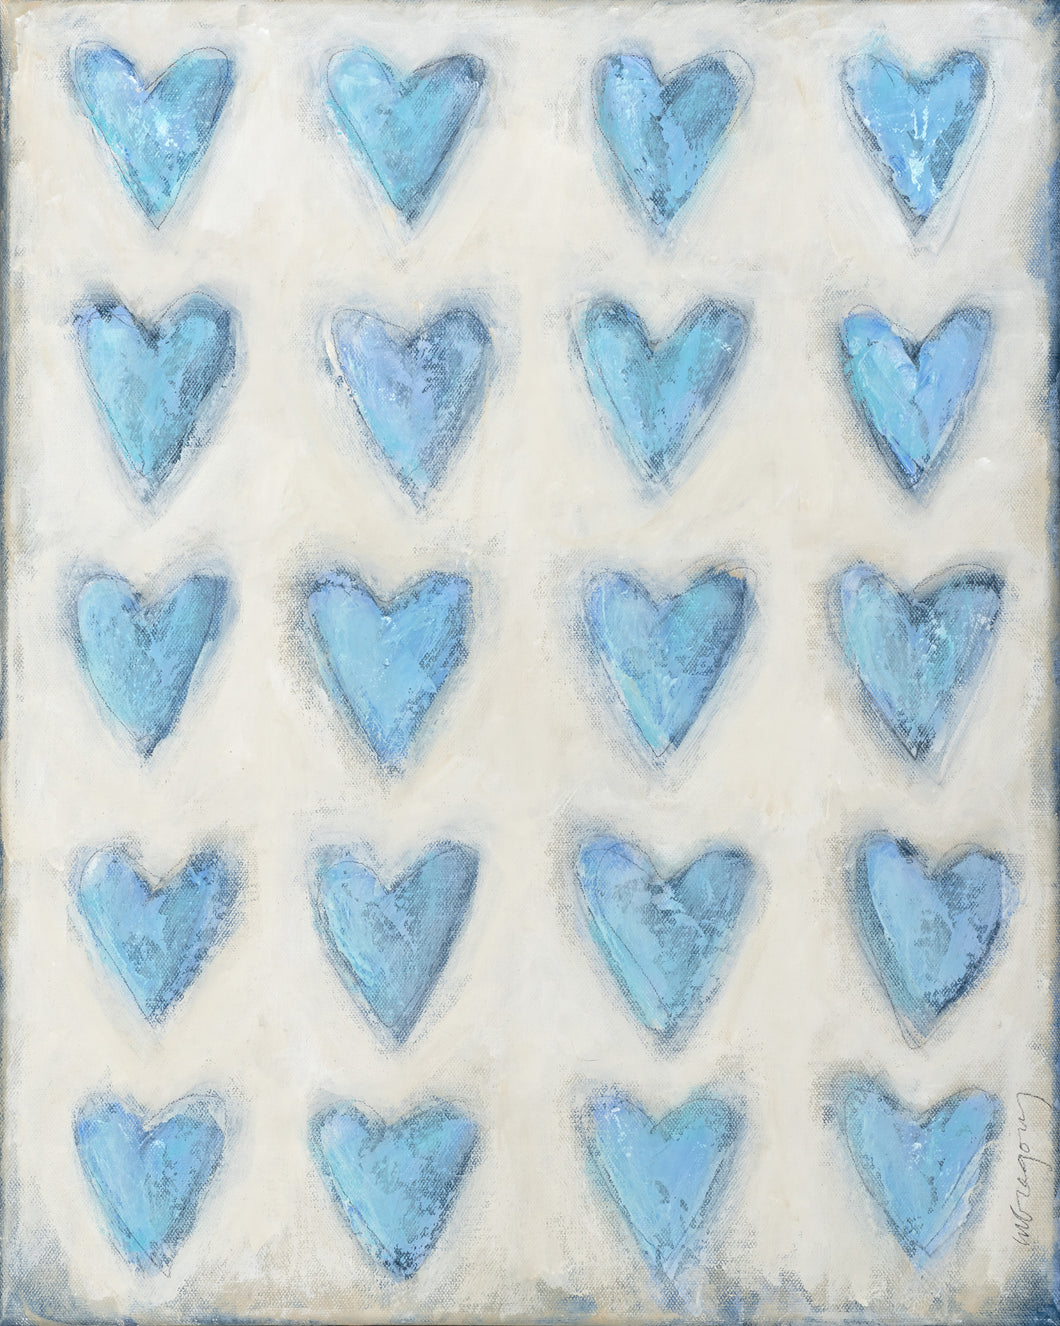 Blue Hearts